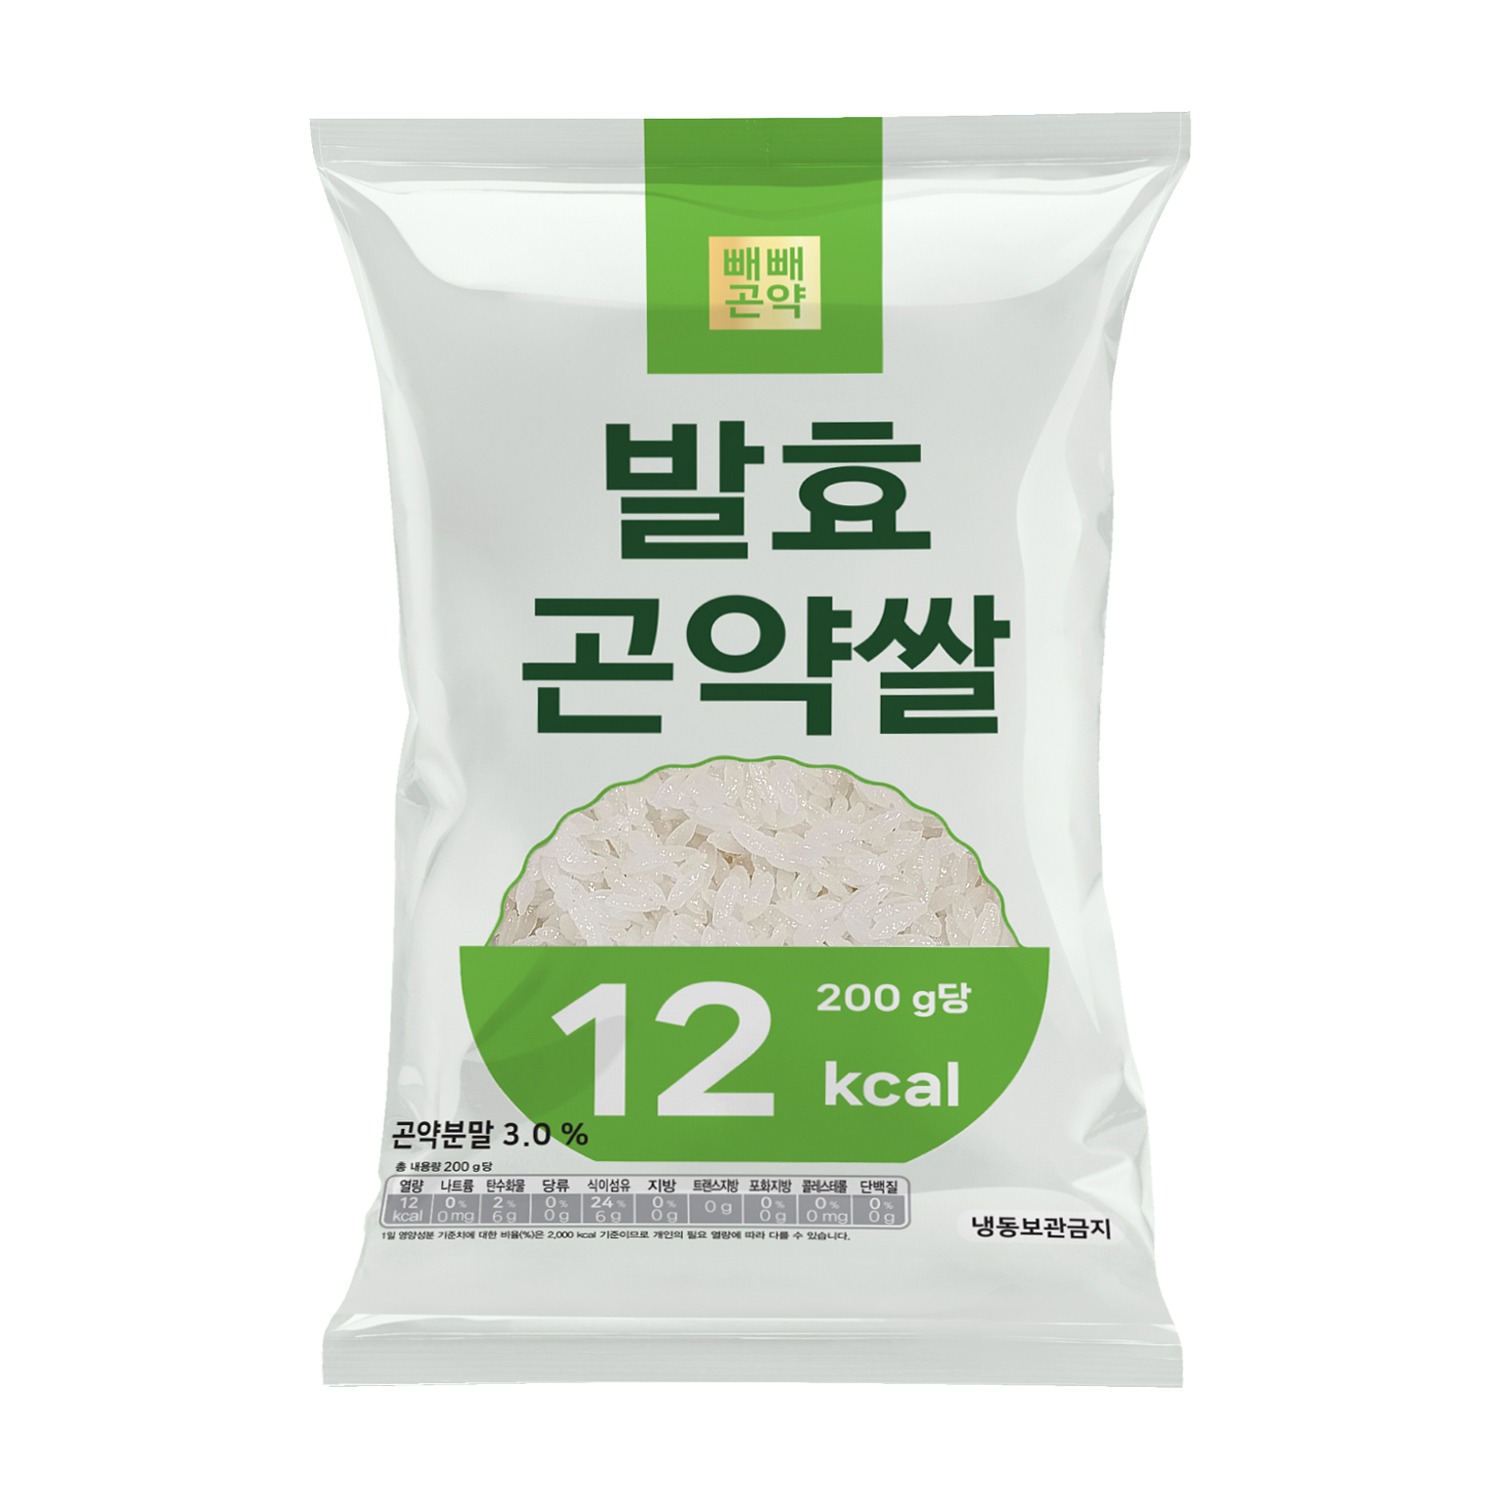 빼빼곤약 발효곤약쌀 200g x 1팩 (100g당 6kcal)